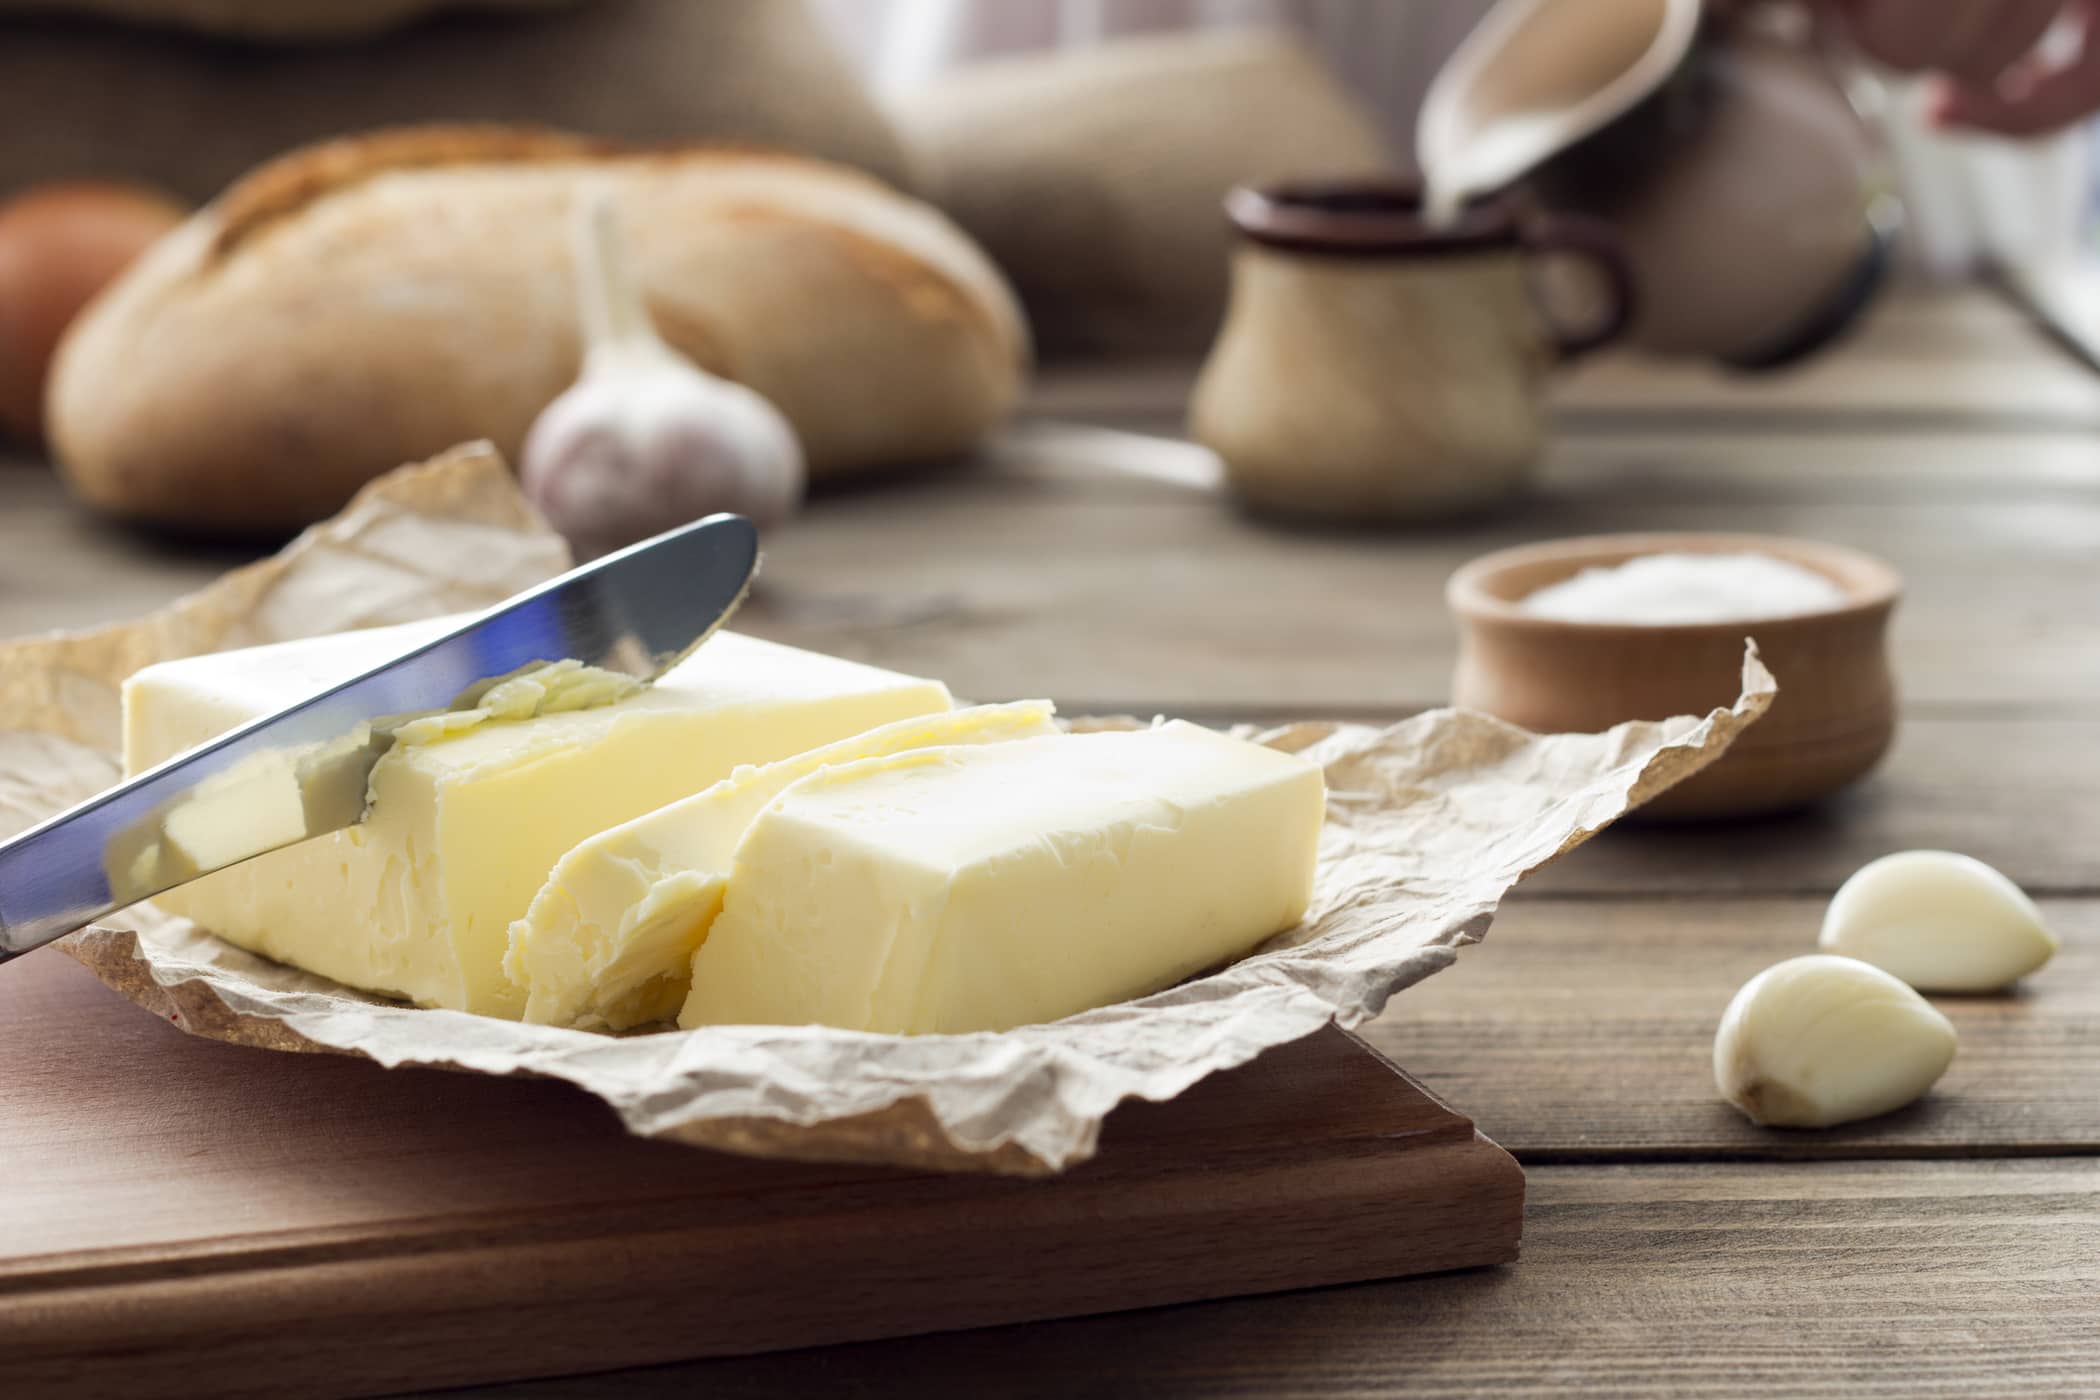 Tra burro e margarina, qual è più sano?